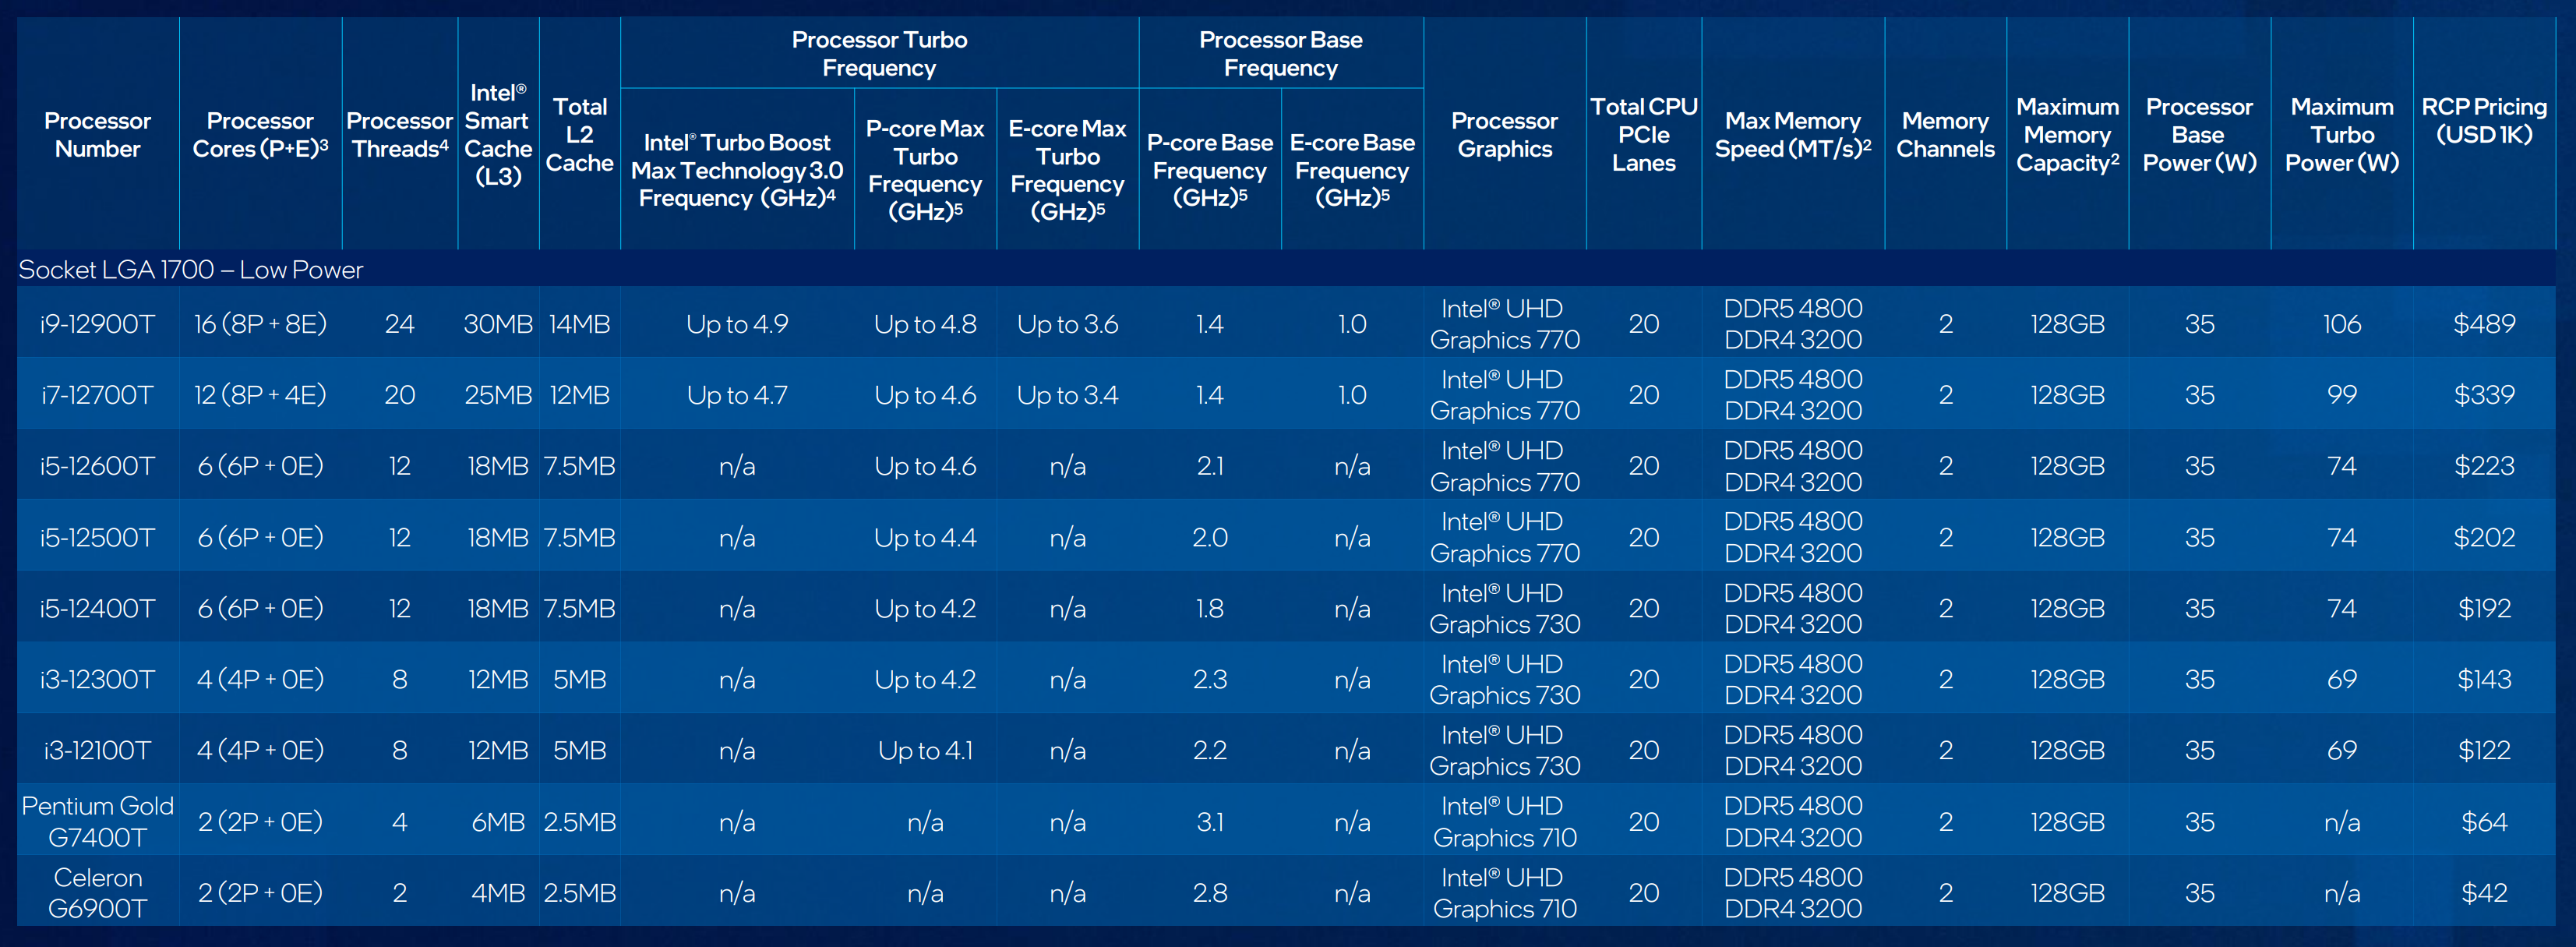 Uma tabela de especificações para a família de processadores Intel Alder Lake de 12ª geração, incluindo velocidades de clock, suporte de RAM e consumo de energia.